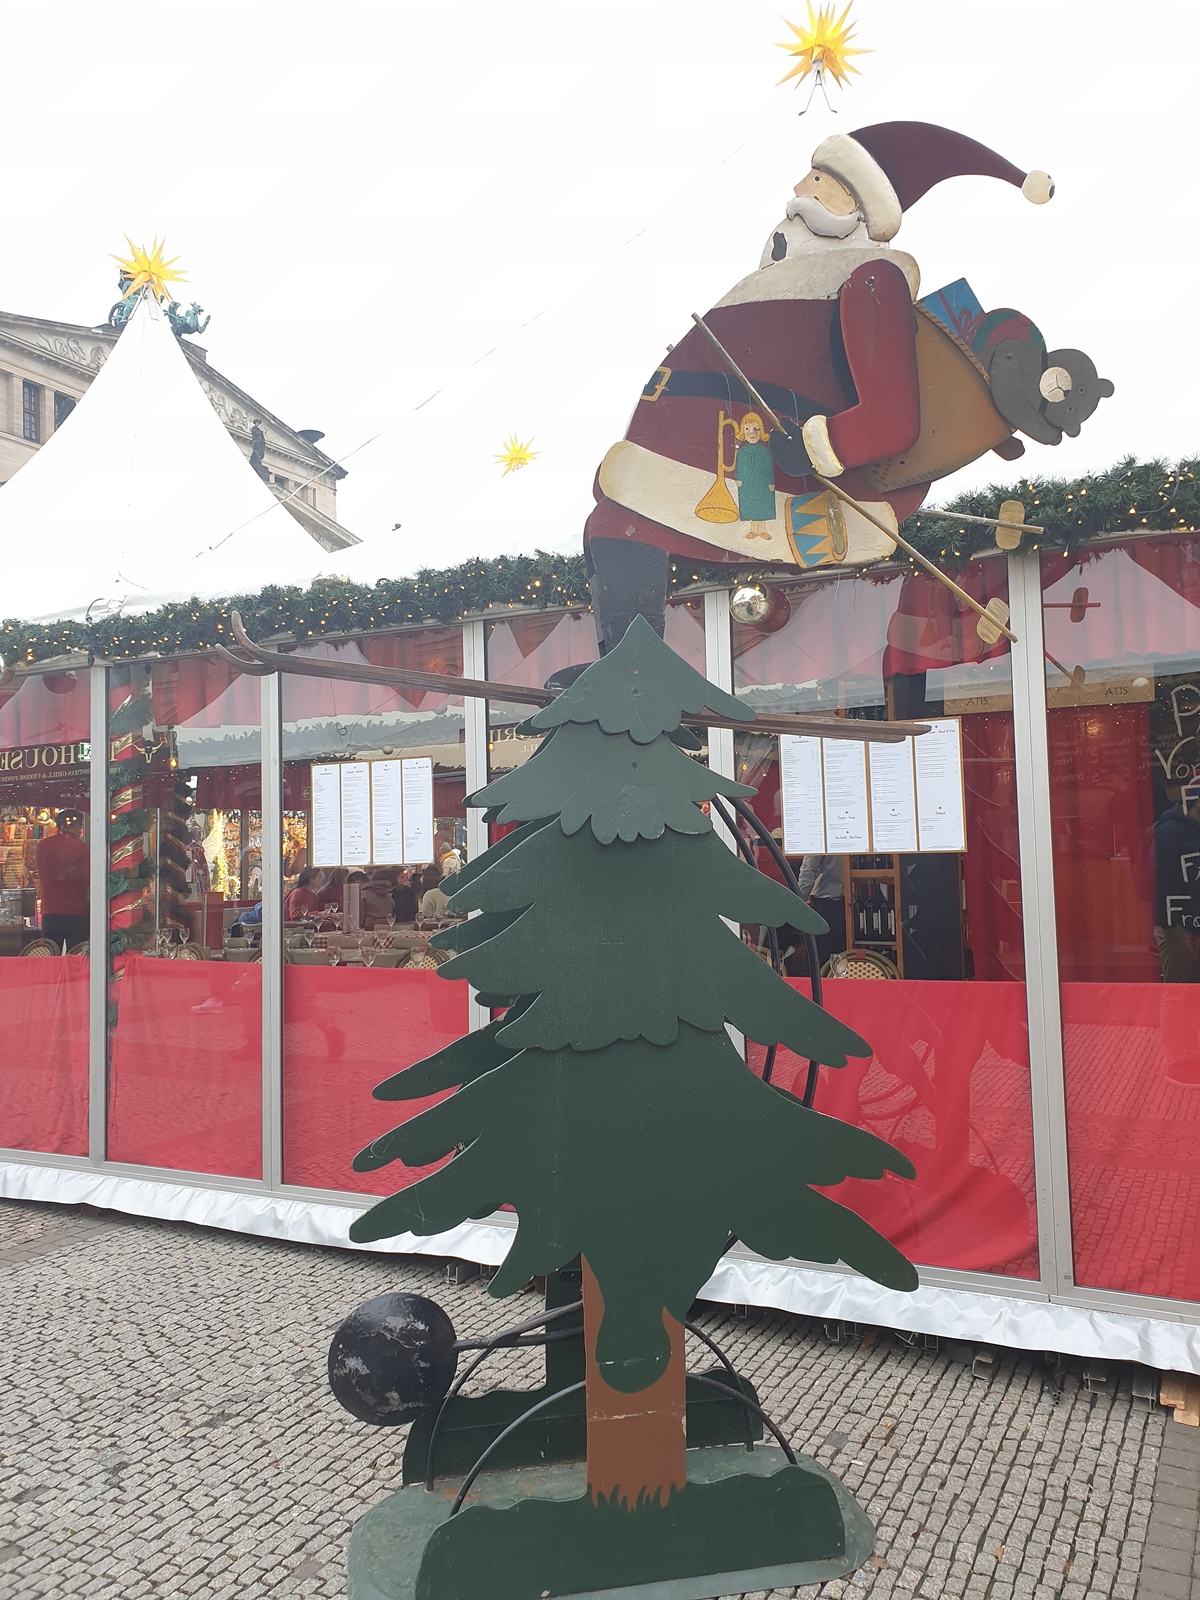 jarmarki świąteczne w berlinie